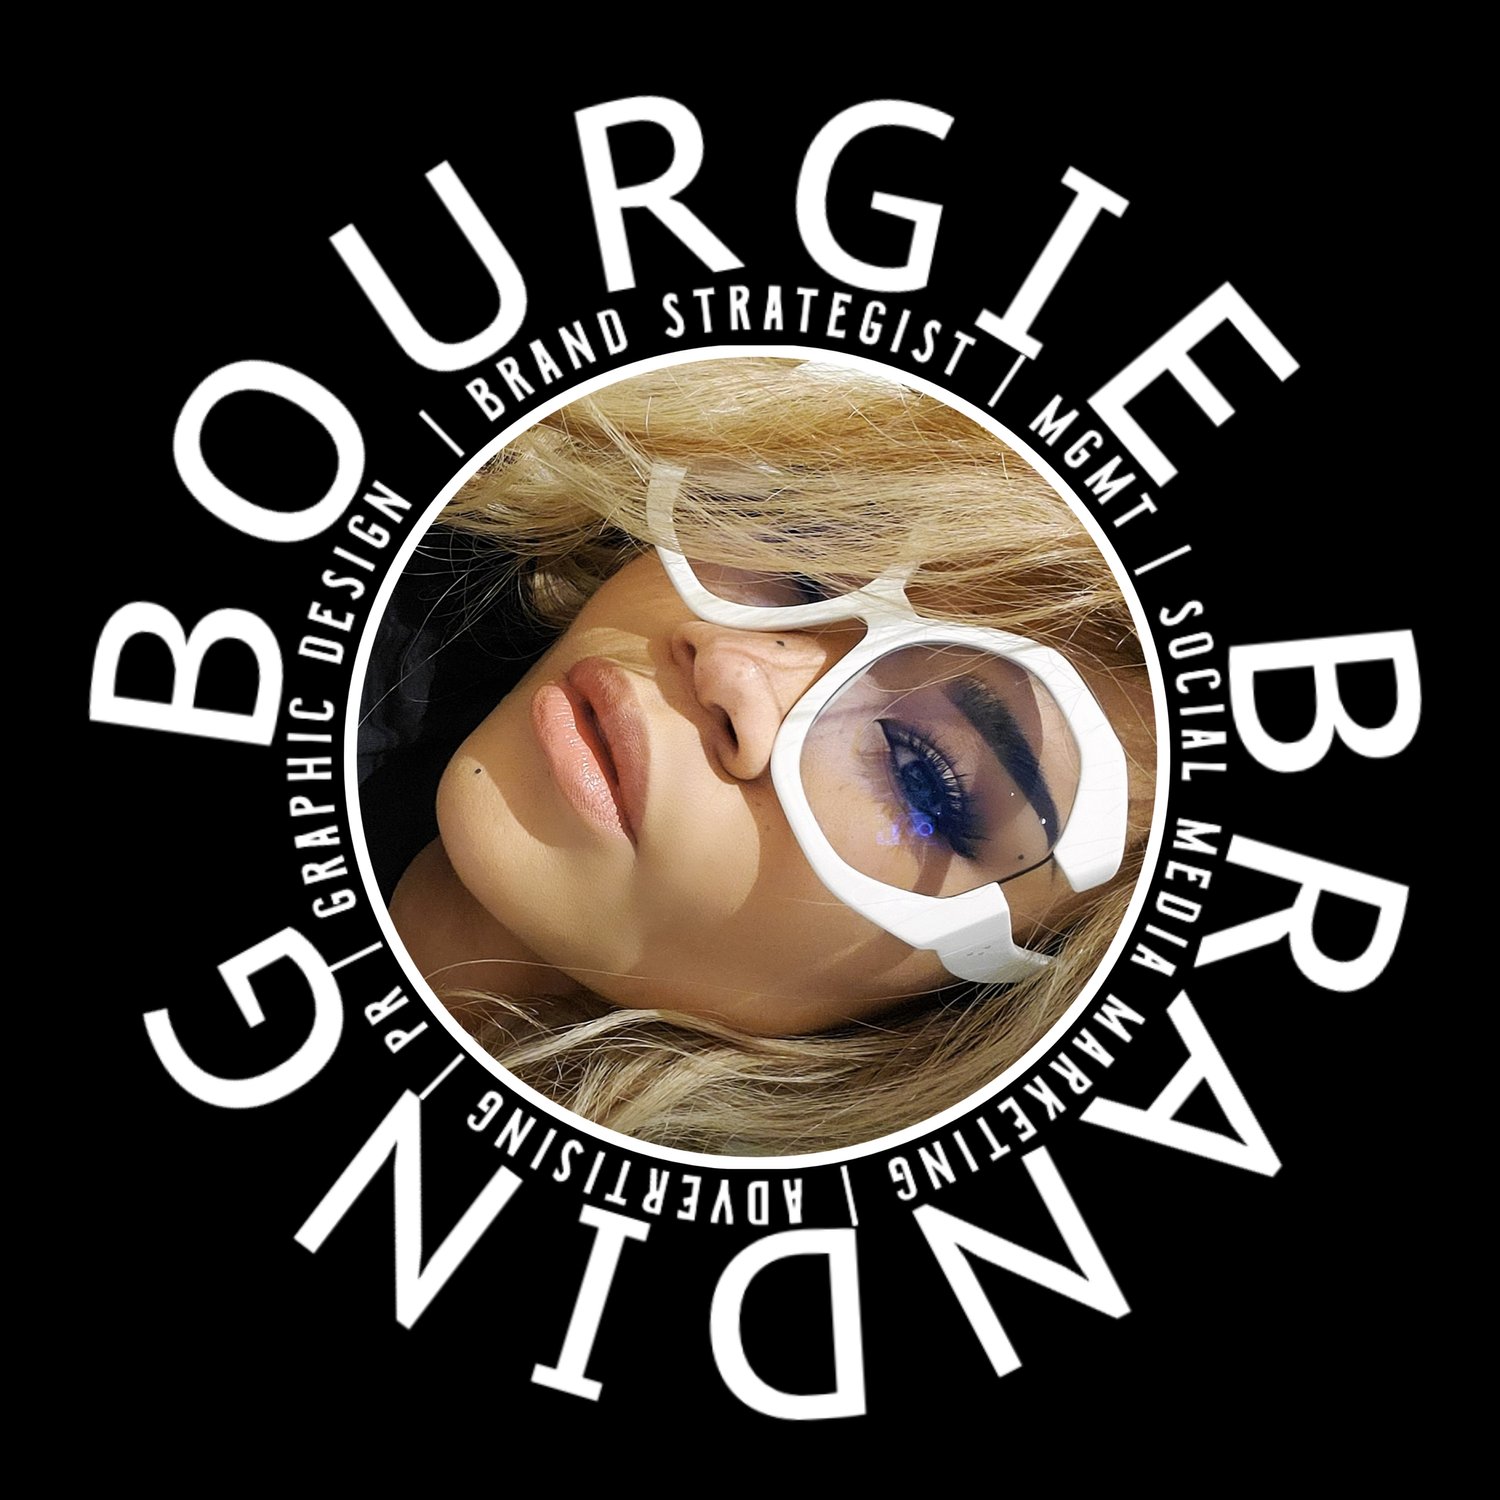 BOURGIE Branding